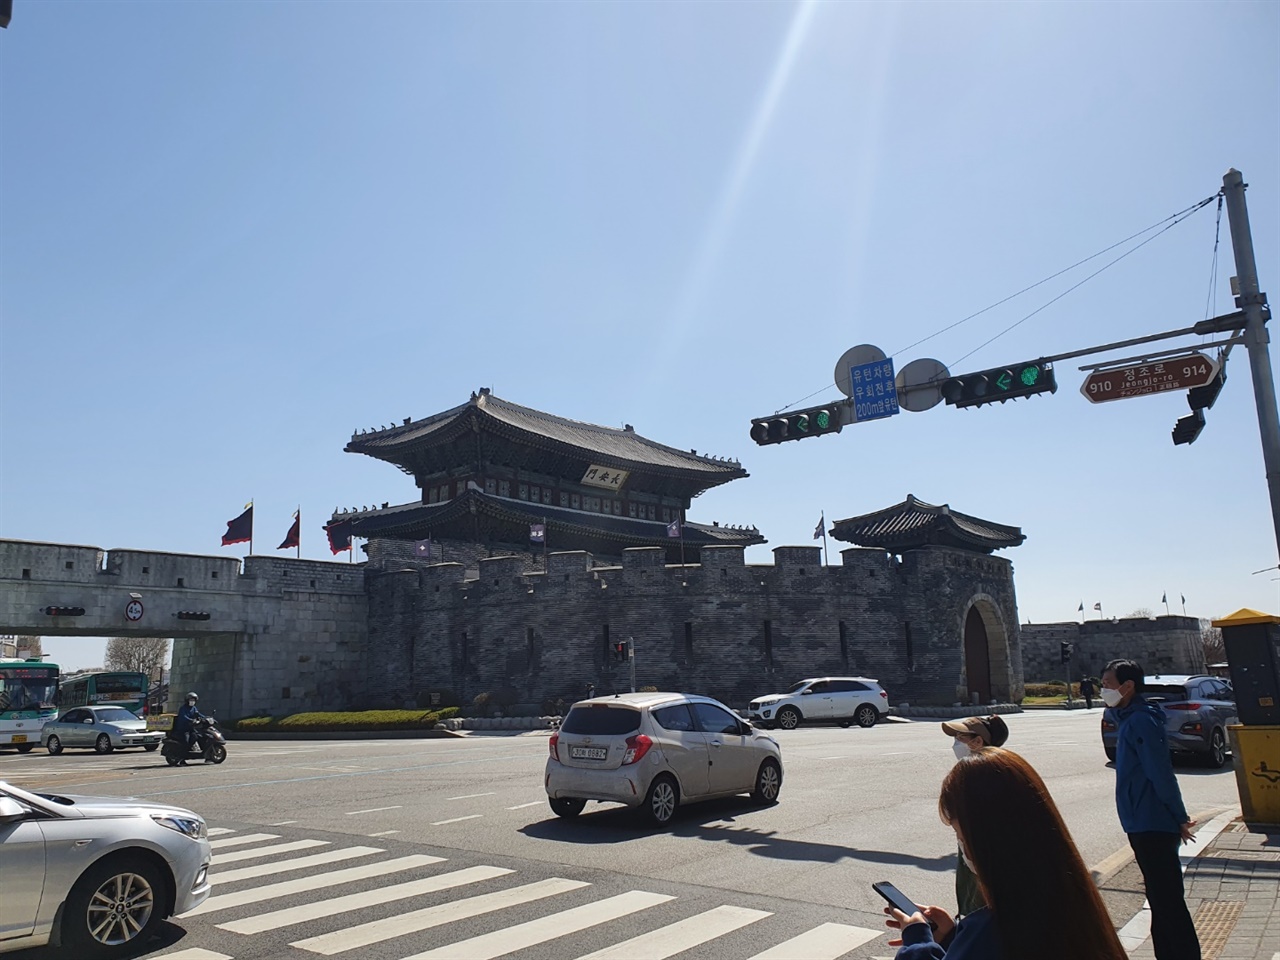 수원 화성의 정문인 장안문은 크기가 서울의 숭례문보다 크고 웅장하다. 한때 성벽이 끊겨 외로운 섬같은 처지였지만 복원공사로 인해 다시 성벽이 이어져 있다.